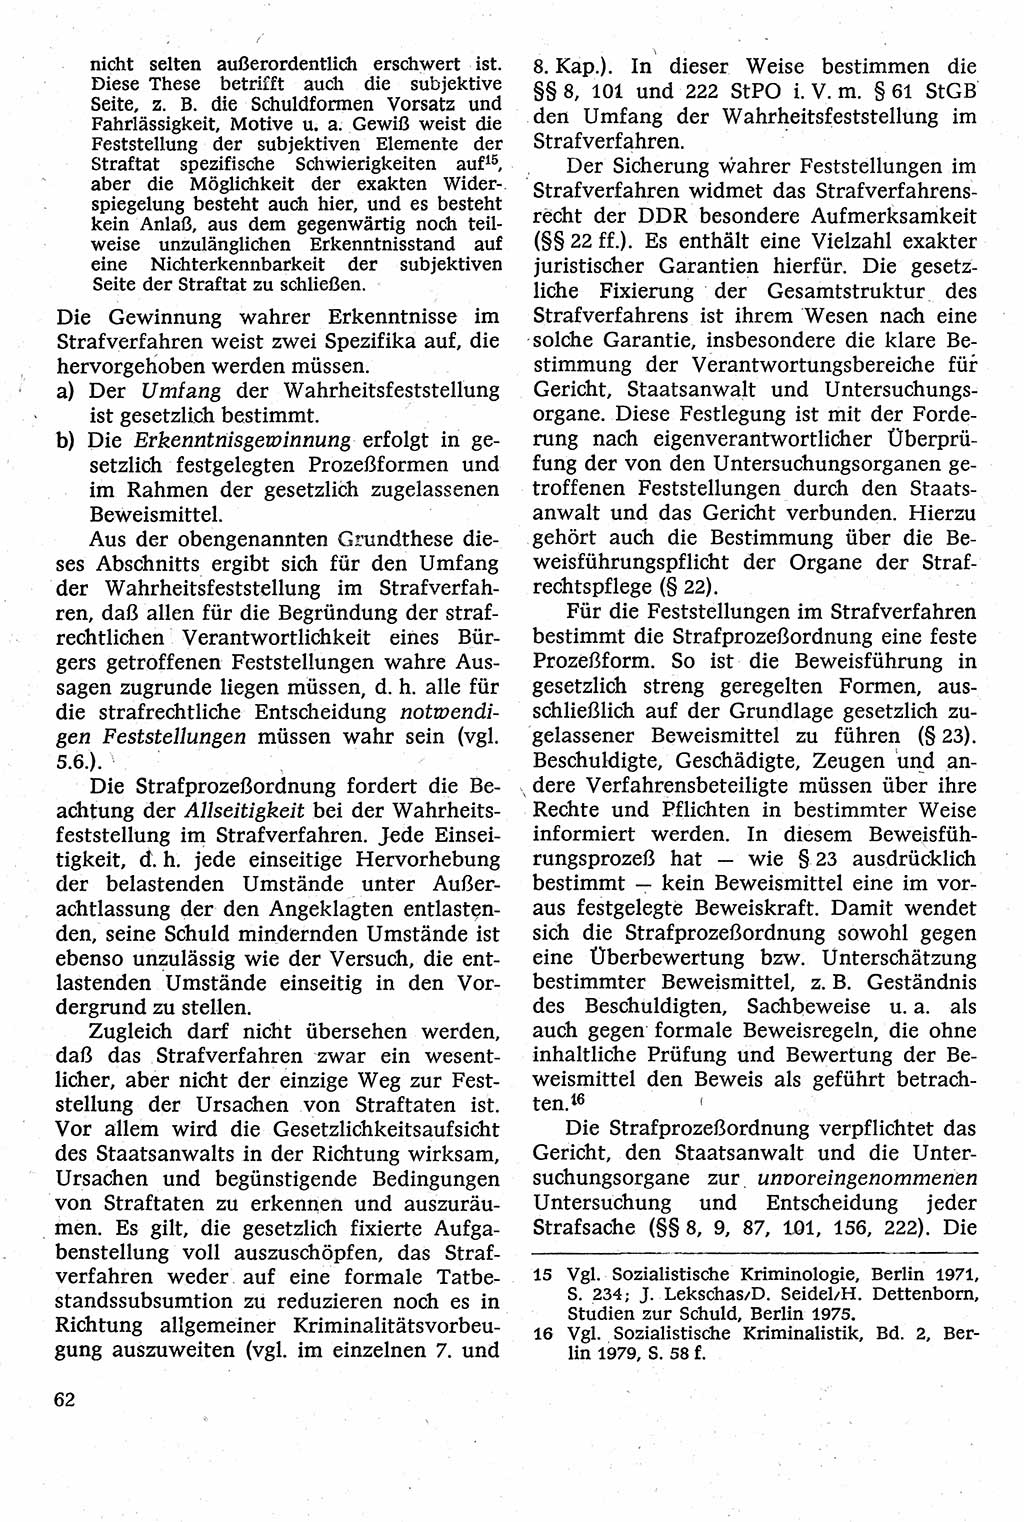 Strafverfahrensrecht [Deutsche Demokratische Republik (DDR)], Lehrbuch 1982, Seite 62 (Strafverf.-R. DDR Lb. 1982, S. 62)